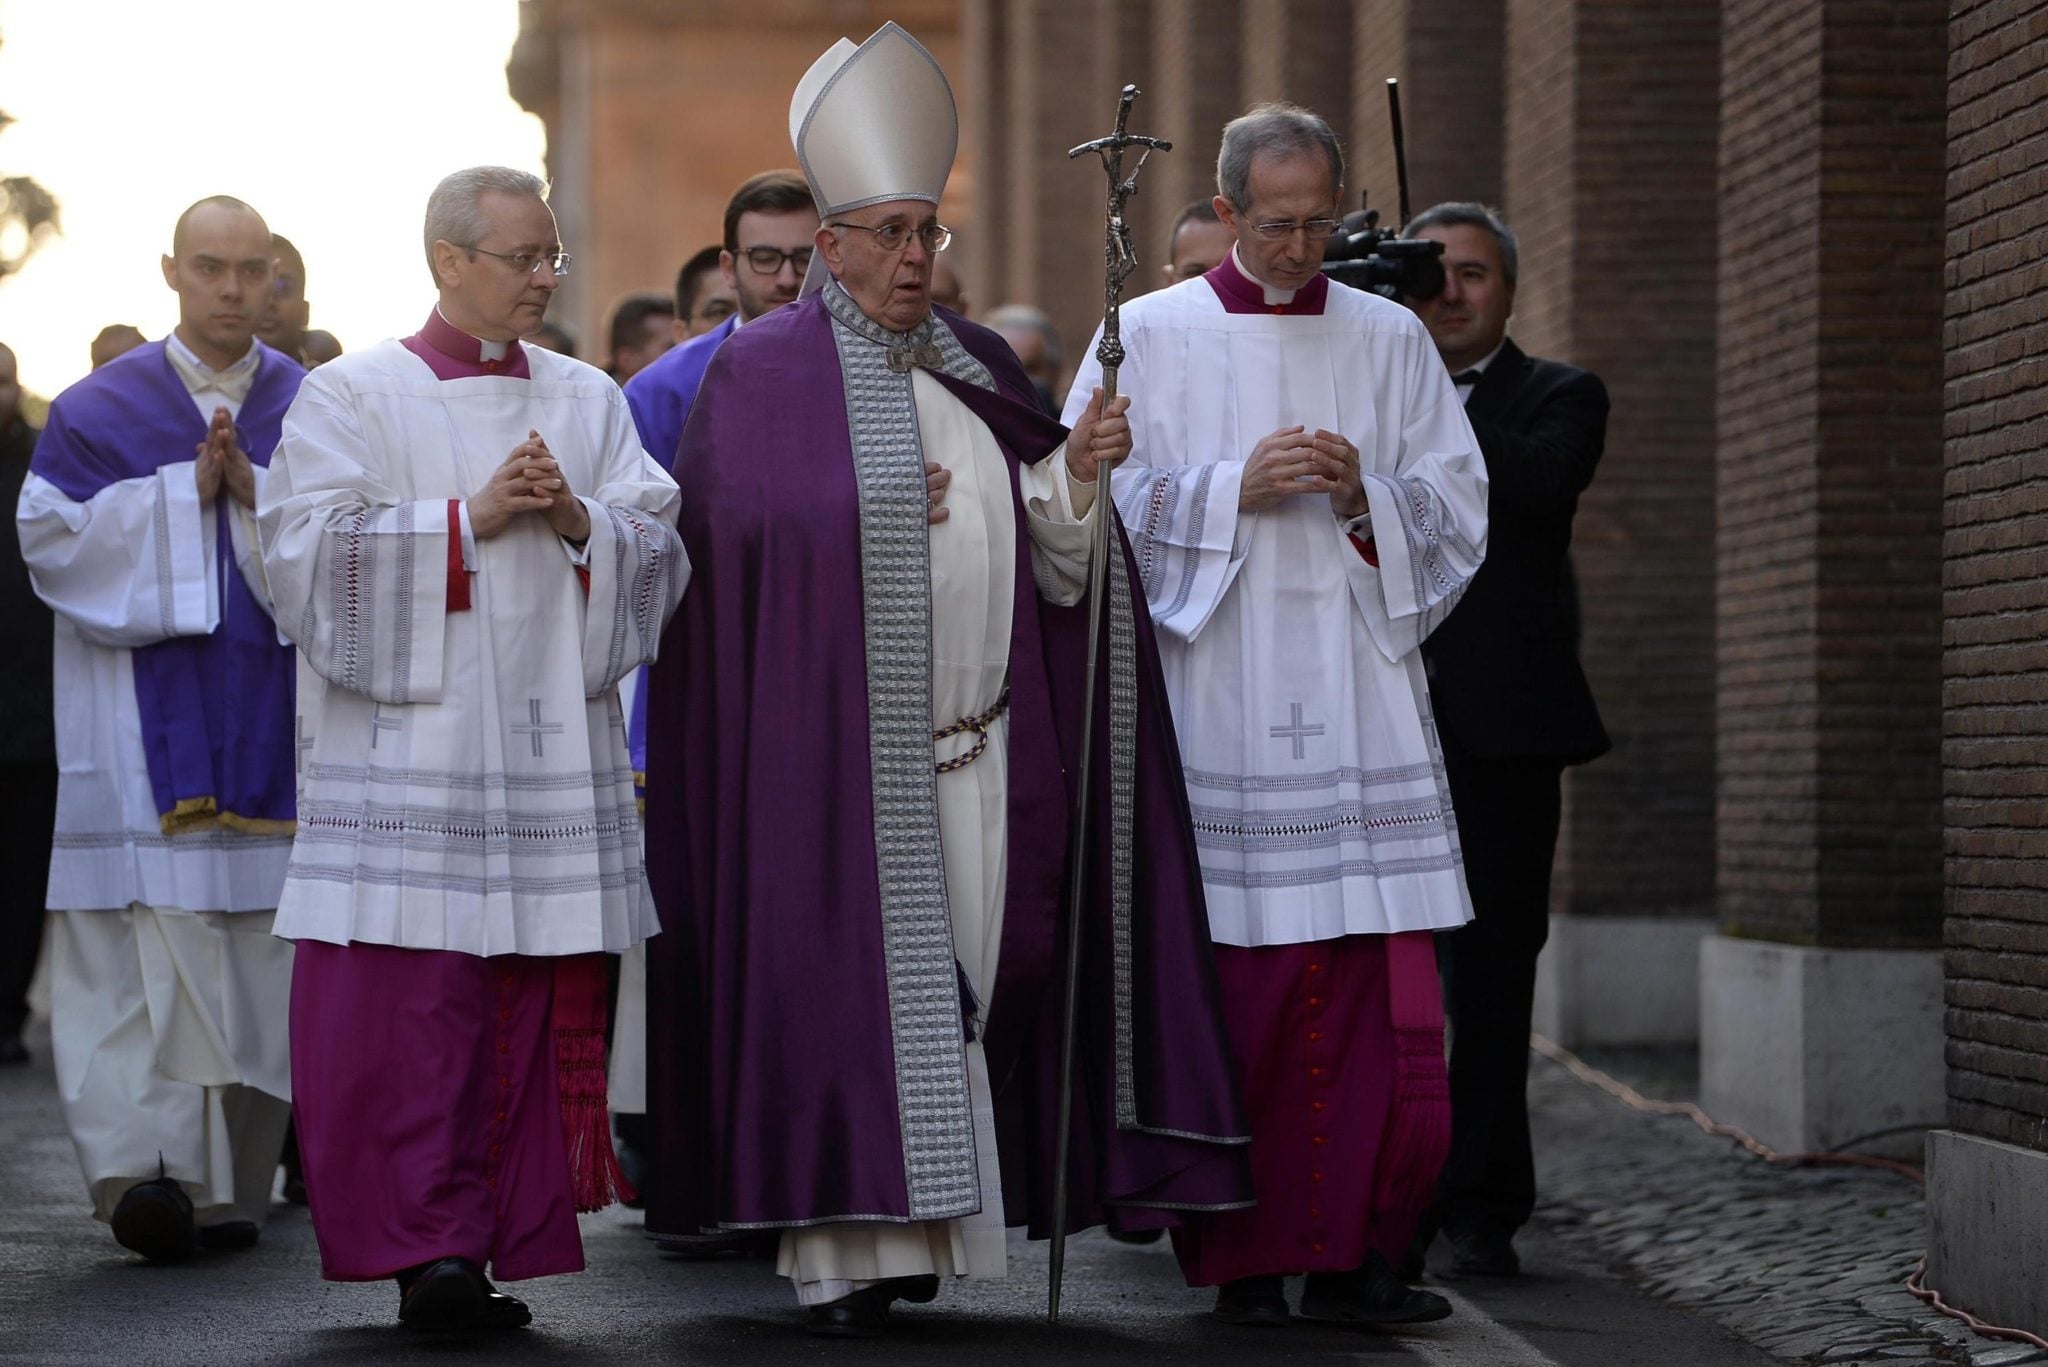  Papież Franciszek w Bazylice Sant'Anselmo w Rzymie. W procesji przeszedł do bazyliki Świętej Sabiny, fot: Filippo Monteforte, PAP/EPA 